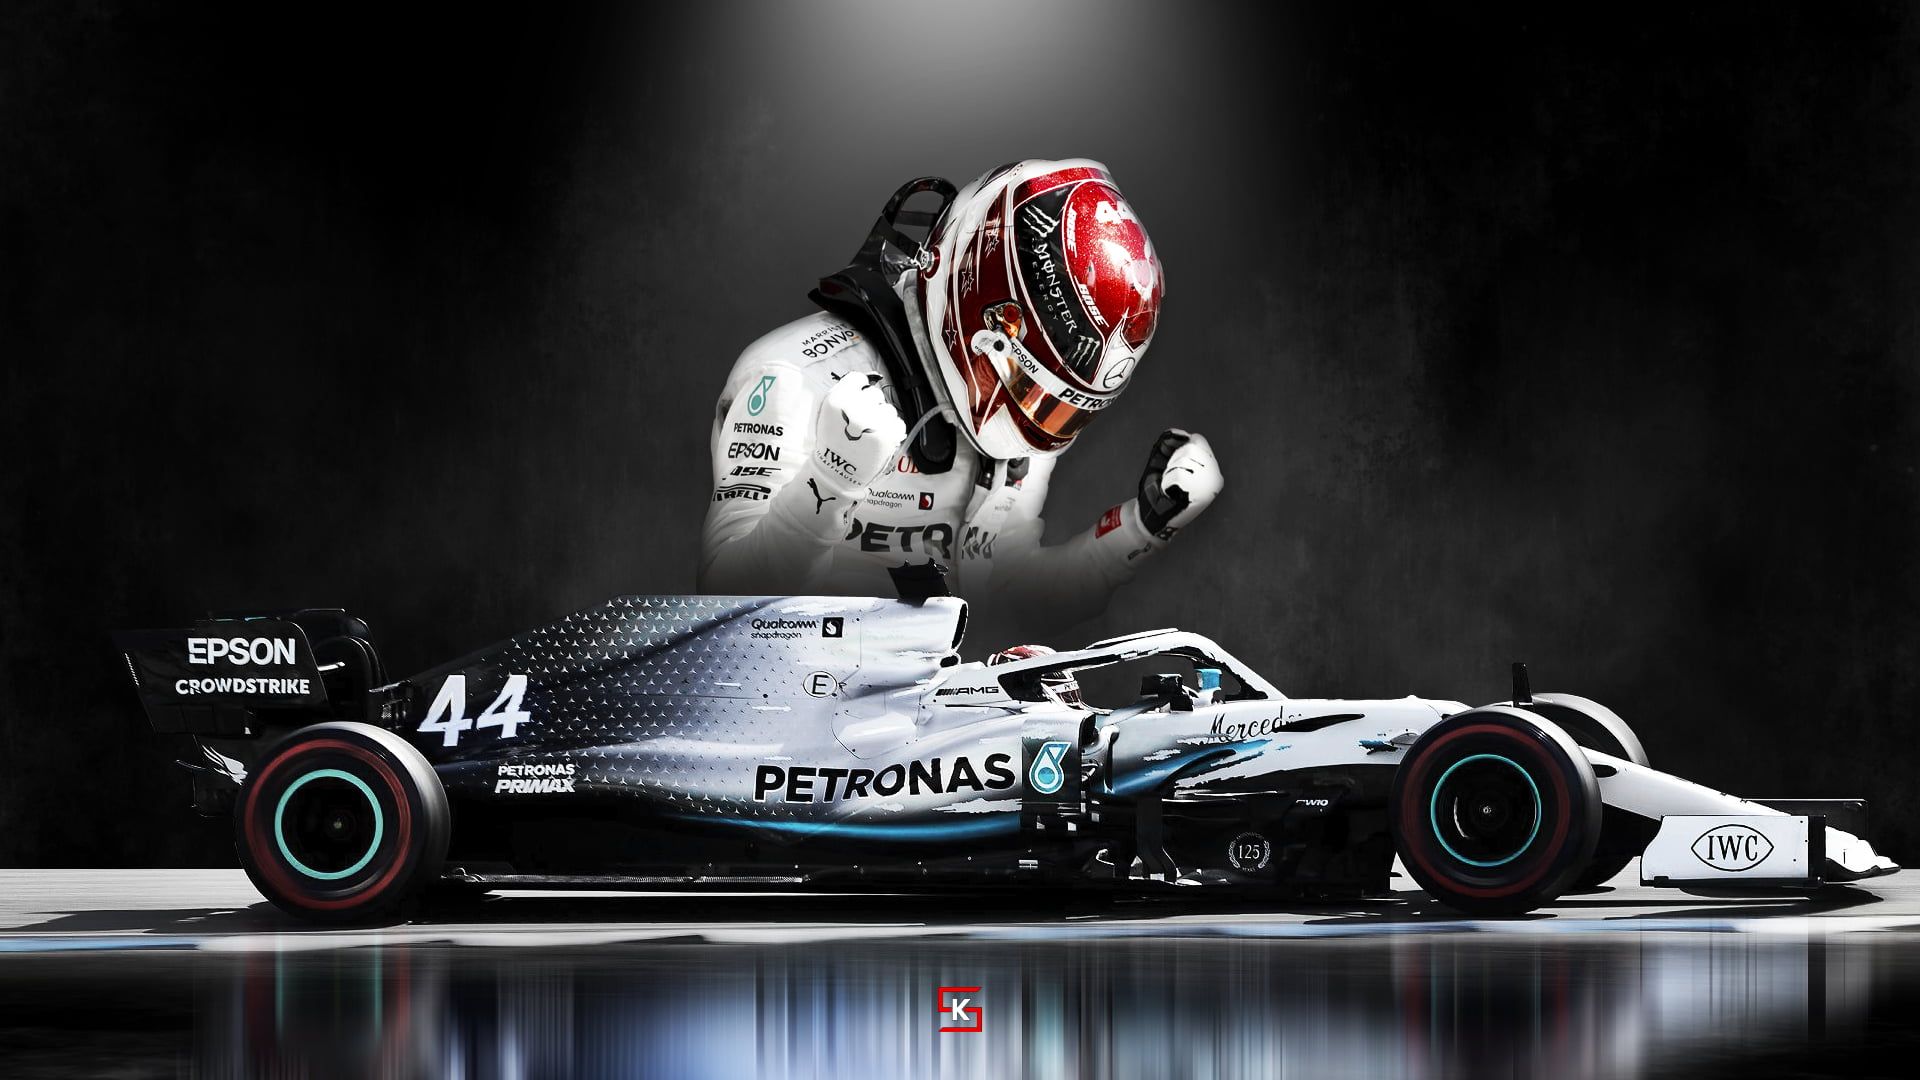 Free Download Formula Mercedes Benz Mercedes F Lewis Hamilton Mercedes Amg X For